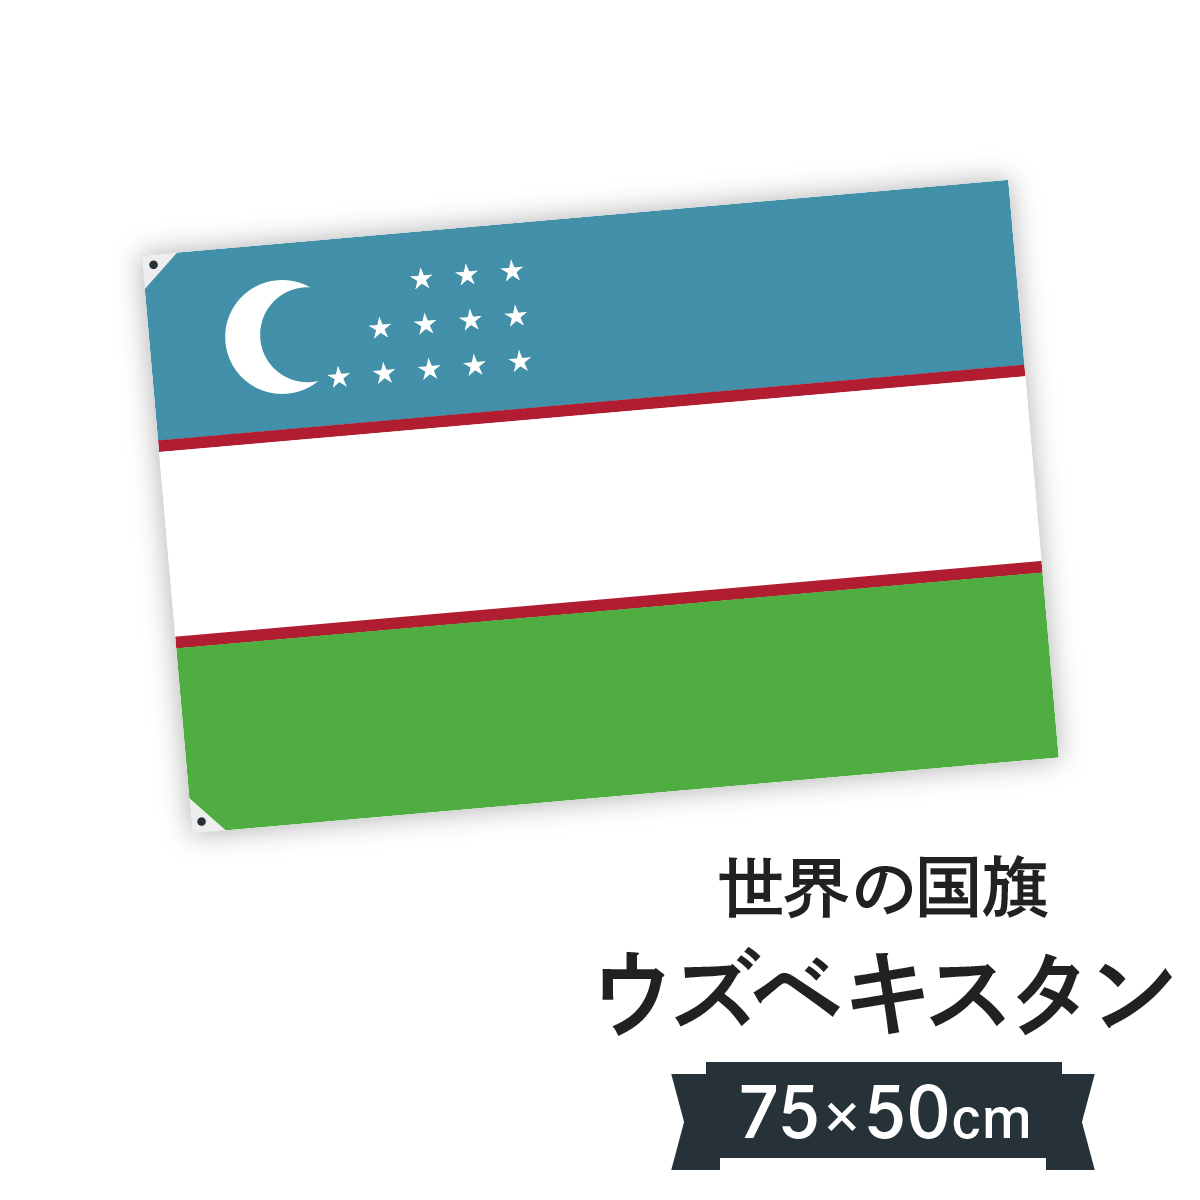 楽天市場 ウズベキスタン共和国 国旗 W75cm H50cm グッズプロ